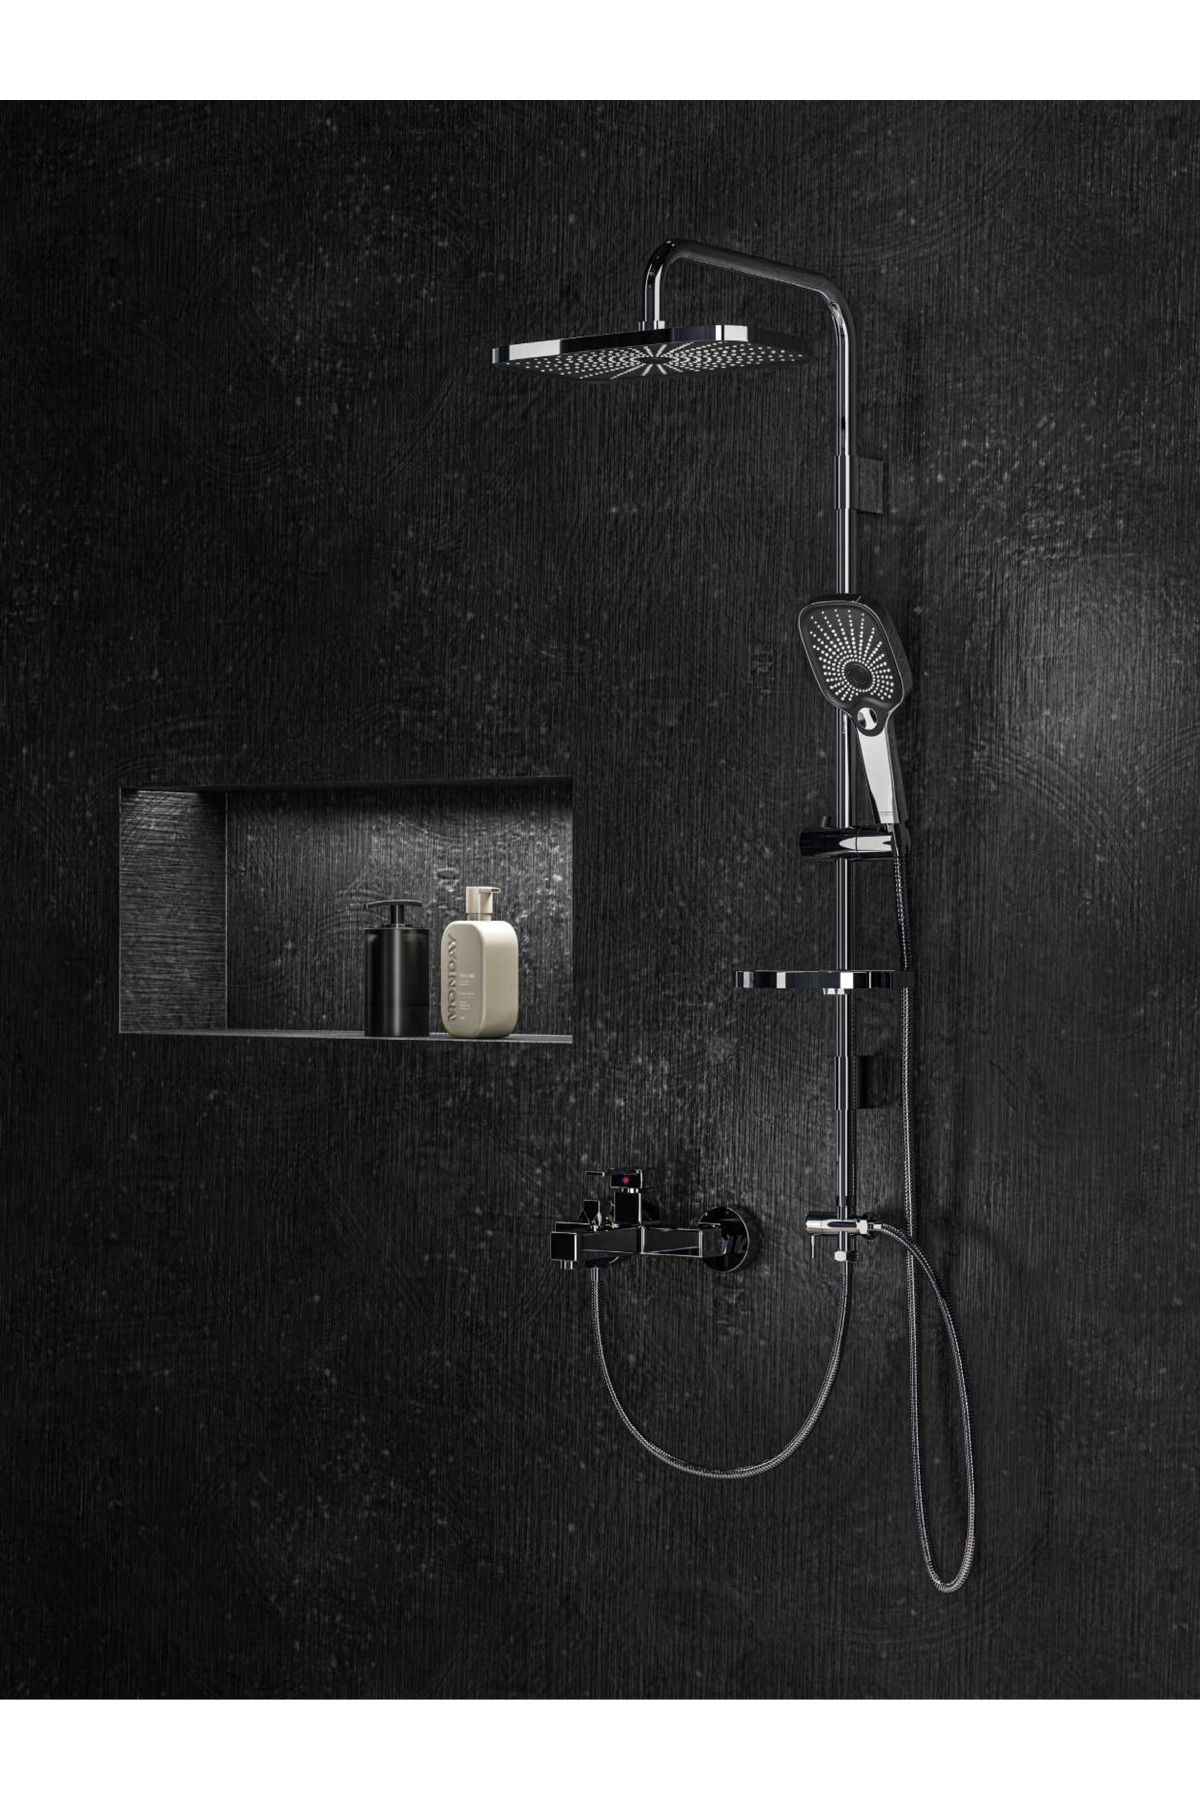 Artema Flo S Banyo Bataryası Krom A41937 + Banto Krom Siyah Robot Tepe Duş Takımı Paslanmaz Duş Başlığı Set